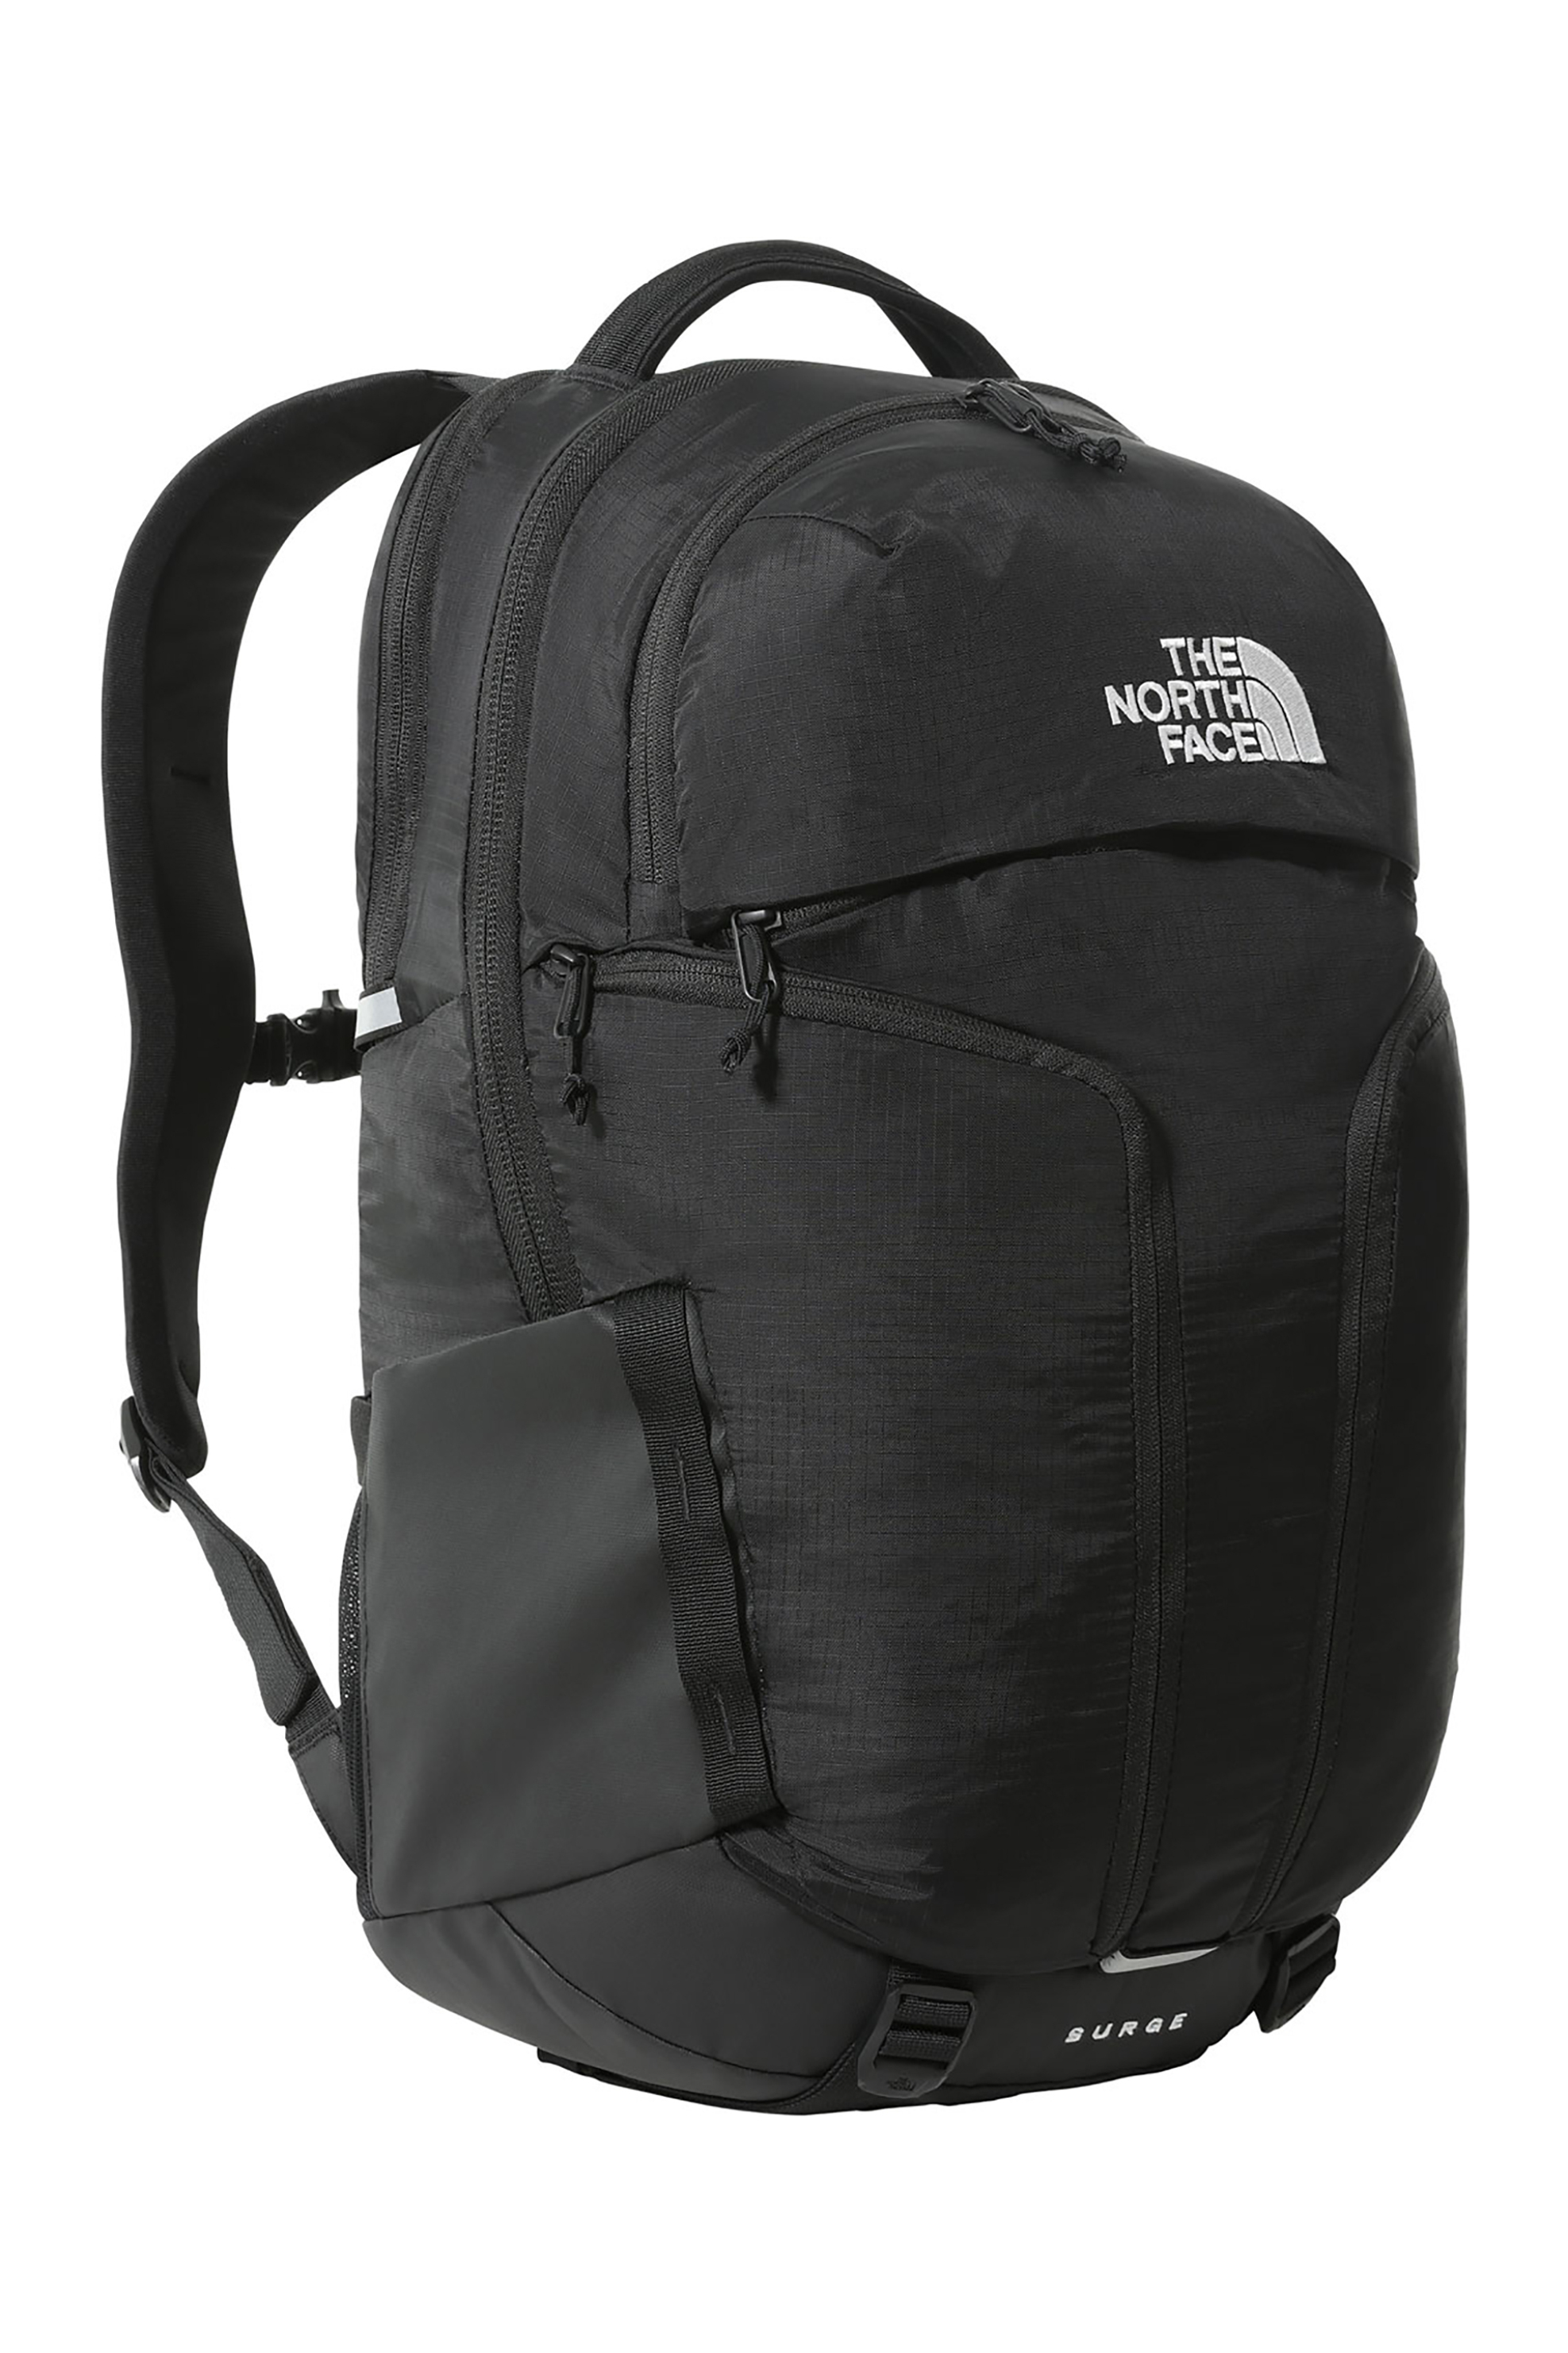 Ανδρική Μόδα > Ανδρικές Τσάντες > Ανδρικά Σακίδια & Backpacks The North Face unisex backpack με κεντημένο logo "Surge" - NF0A52SGKX71 Μαύρο